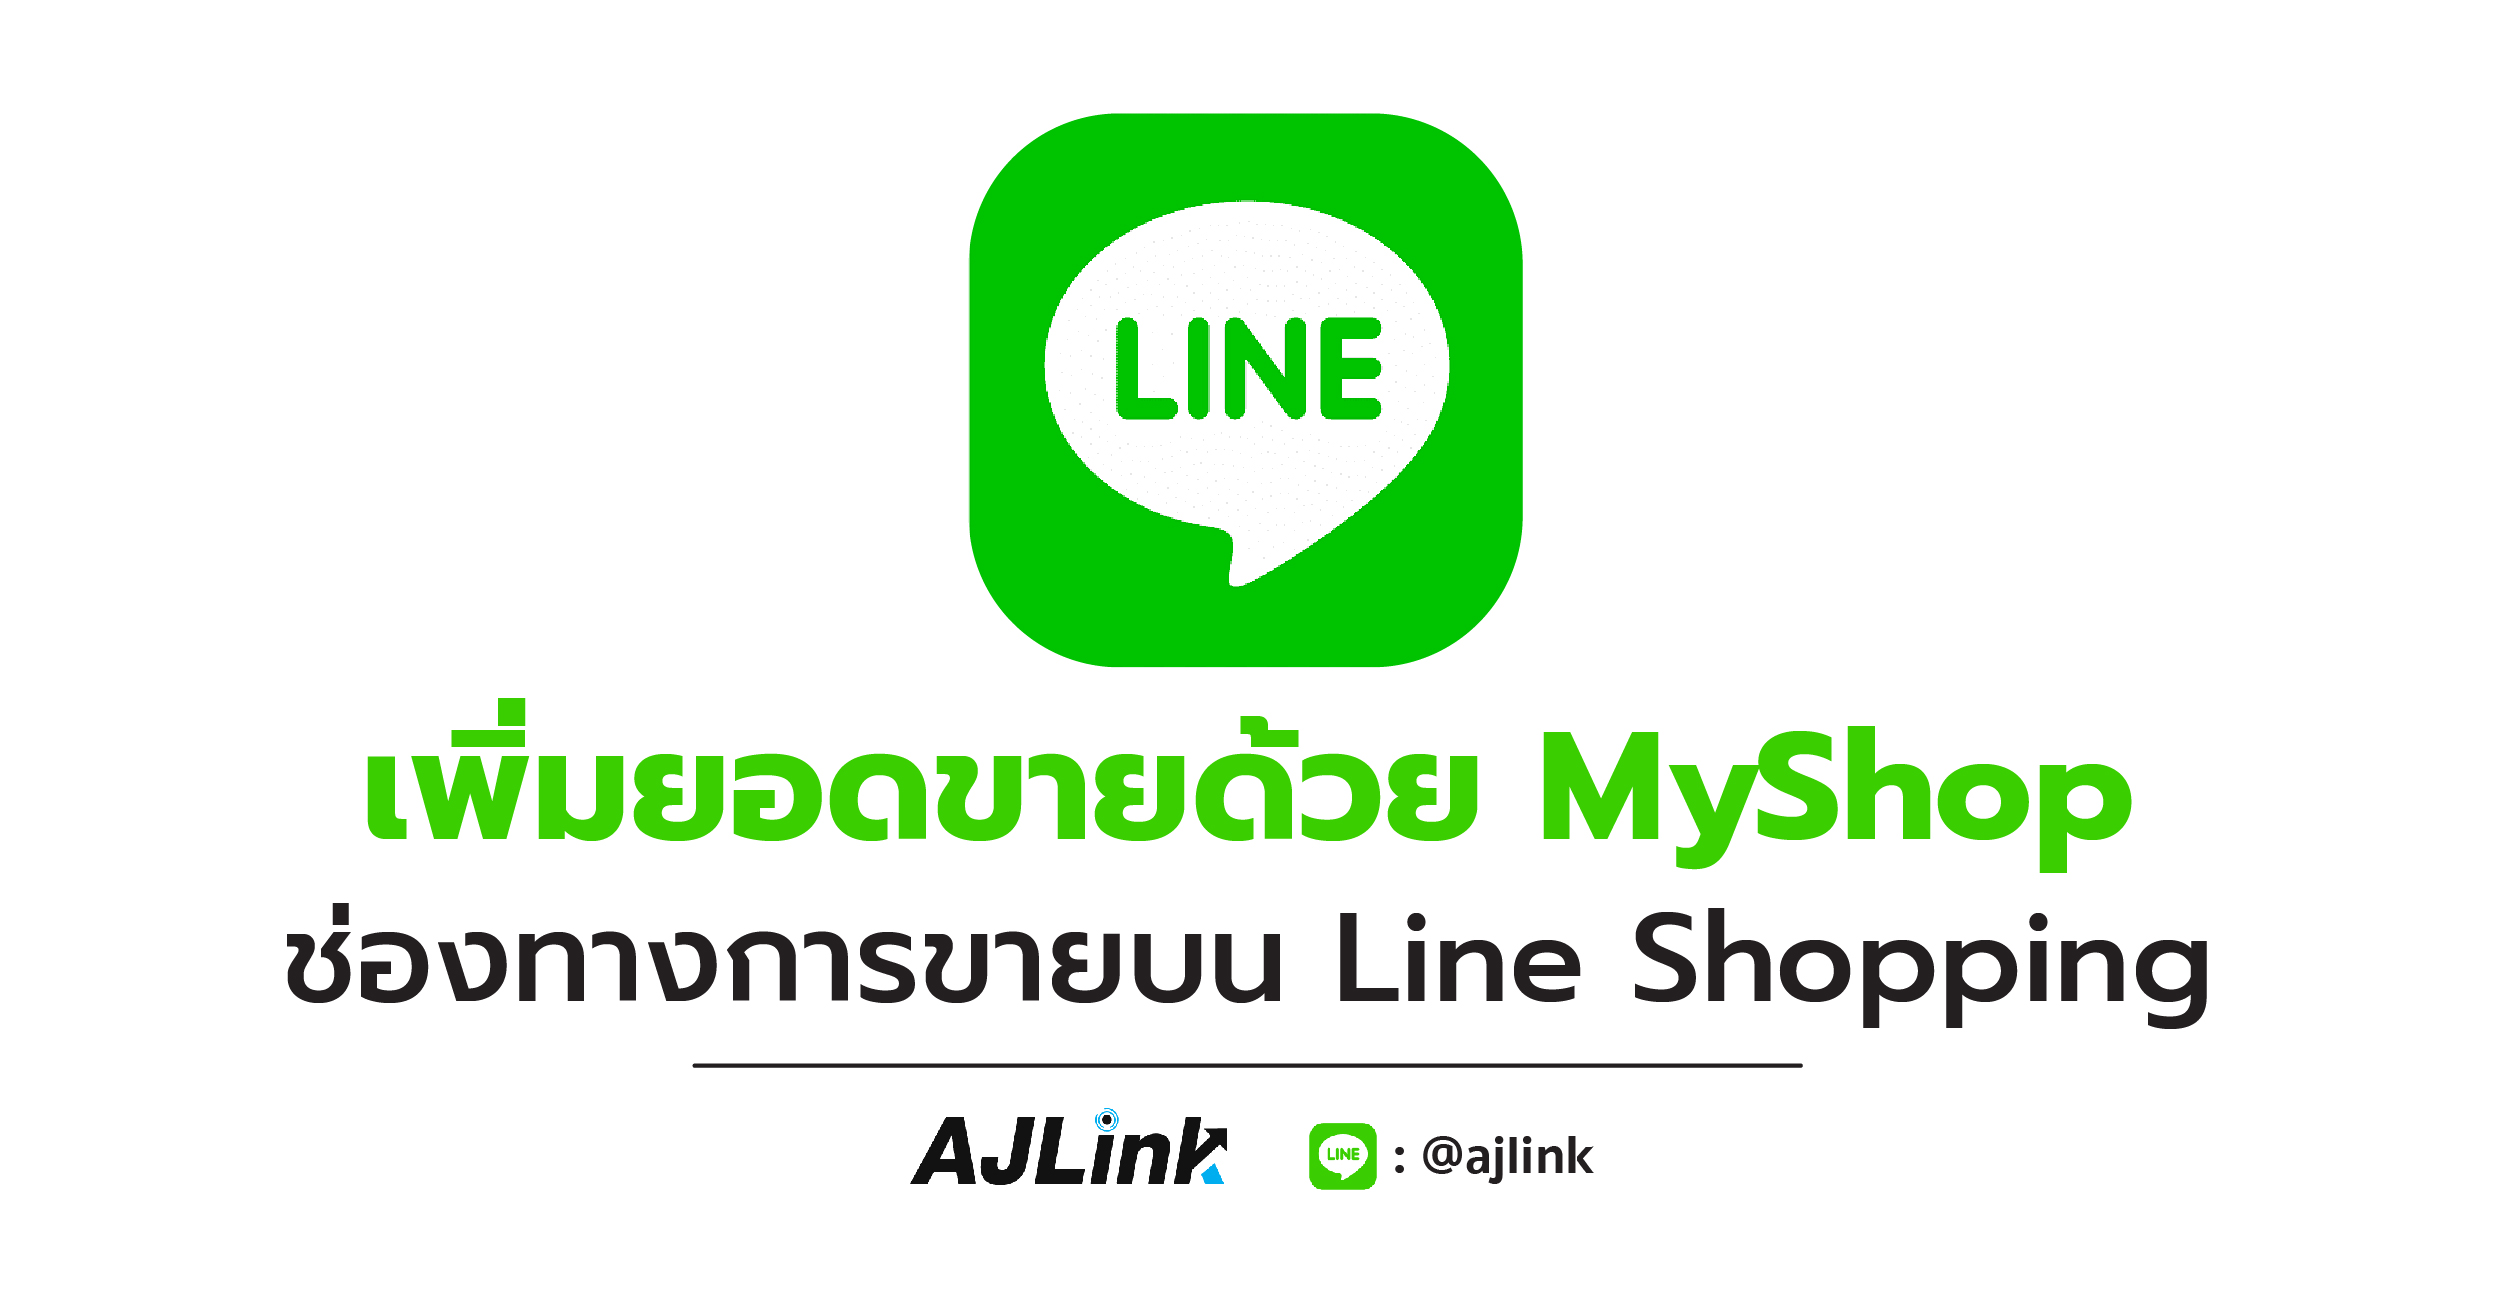 เพิ่มยอดขายด้วย MyShop ช่องทางการขายบน Line Shopping